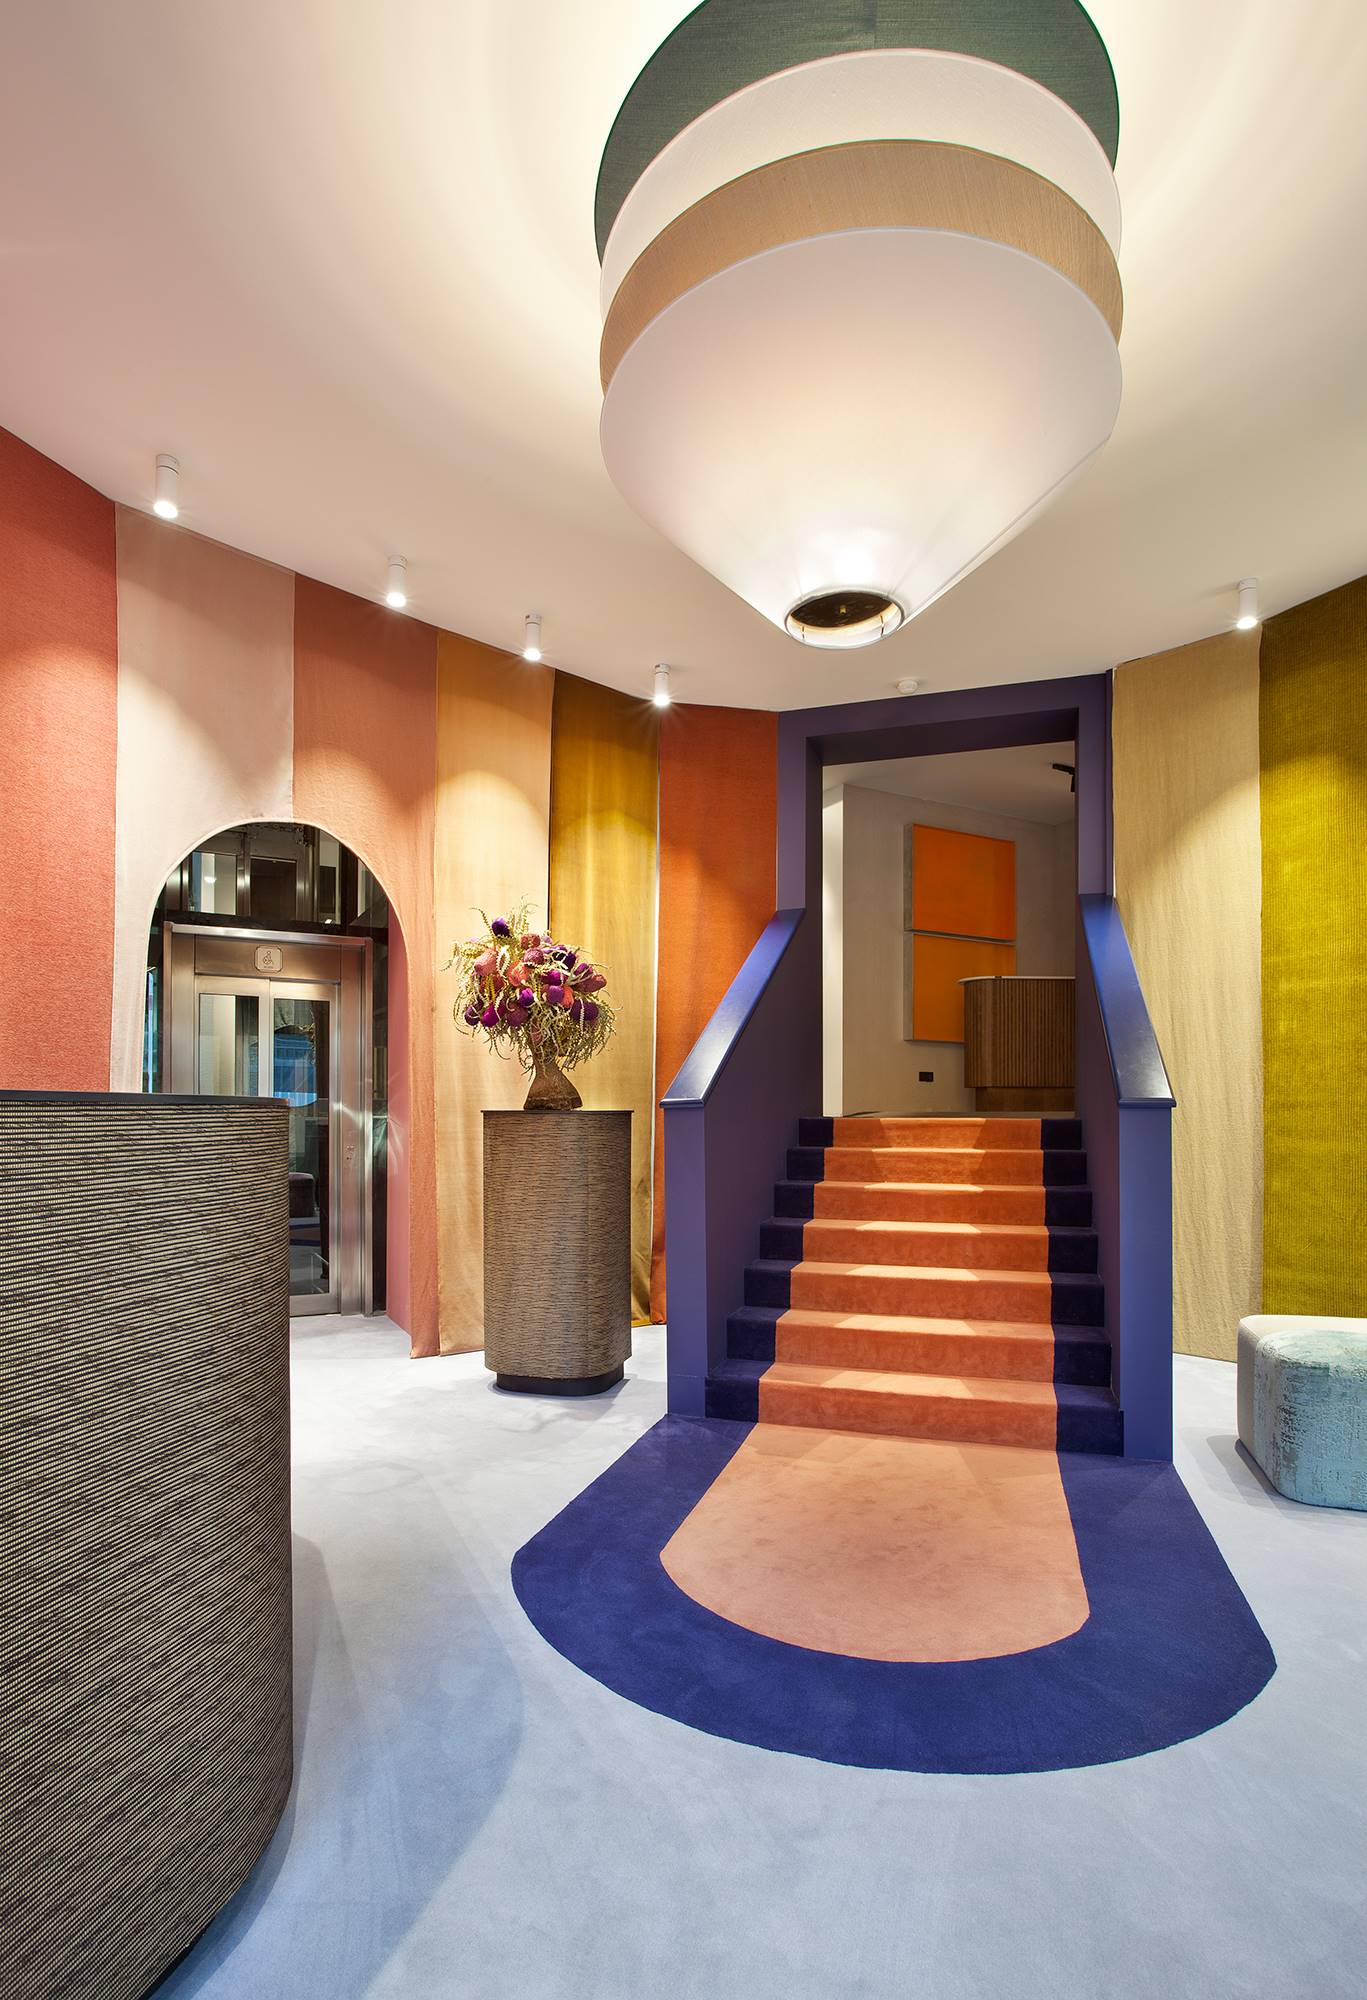 Hall de entrada y escalera decorada a dos colores